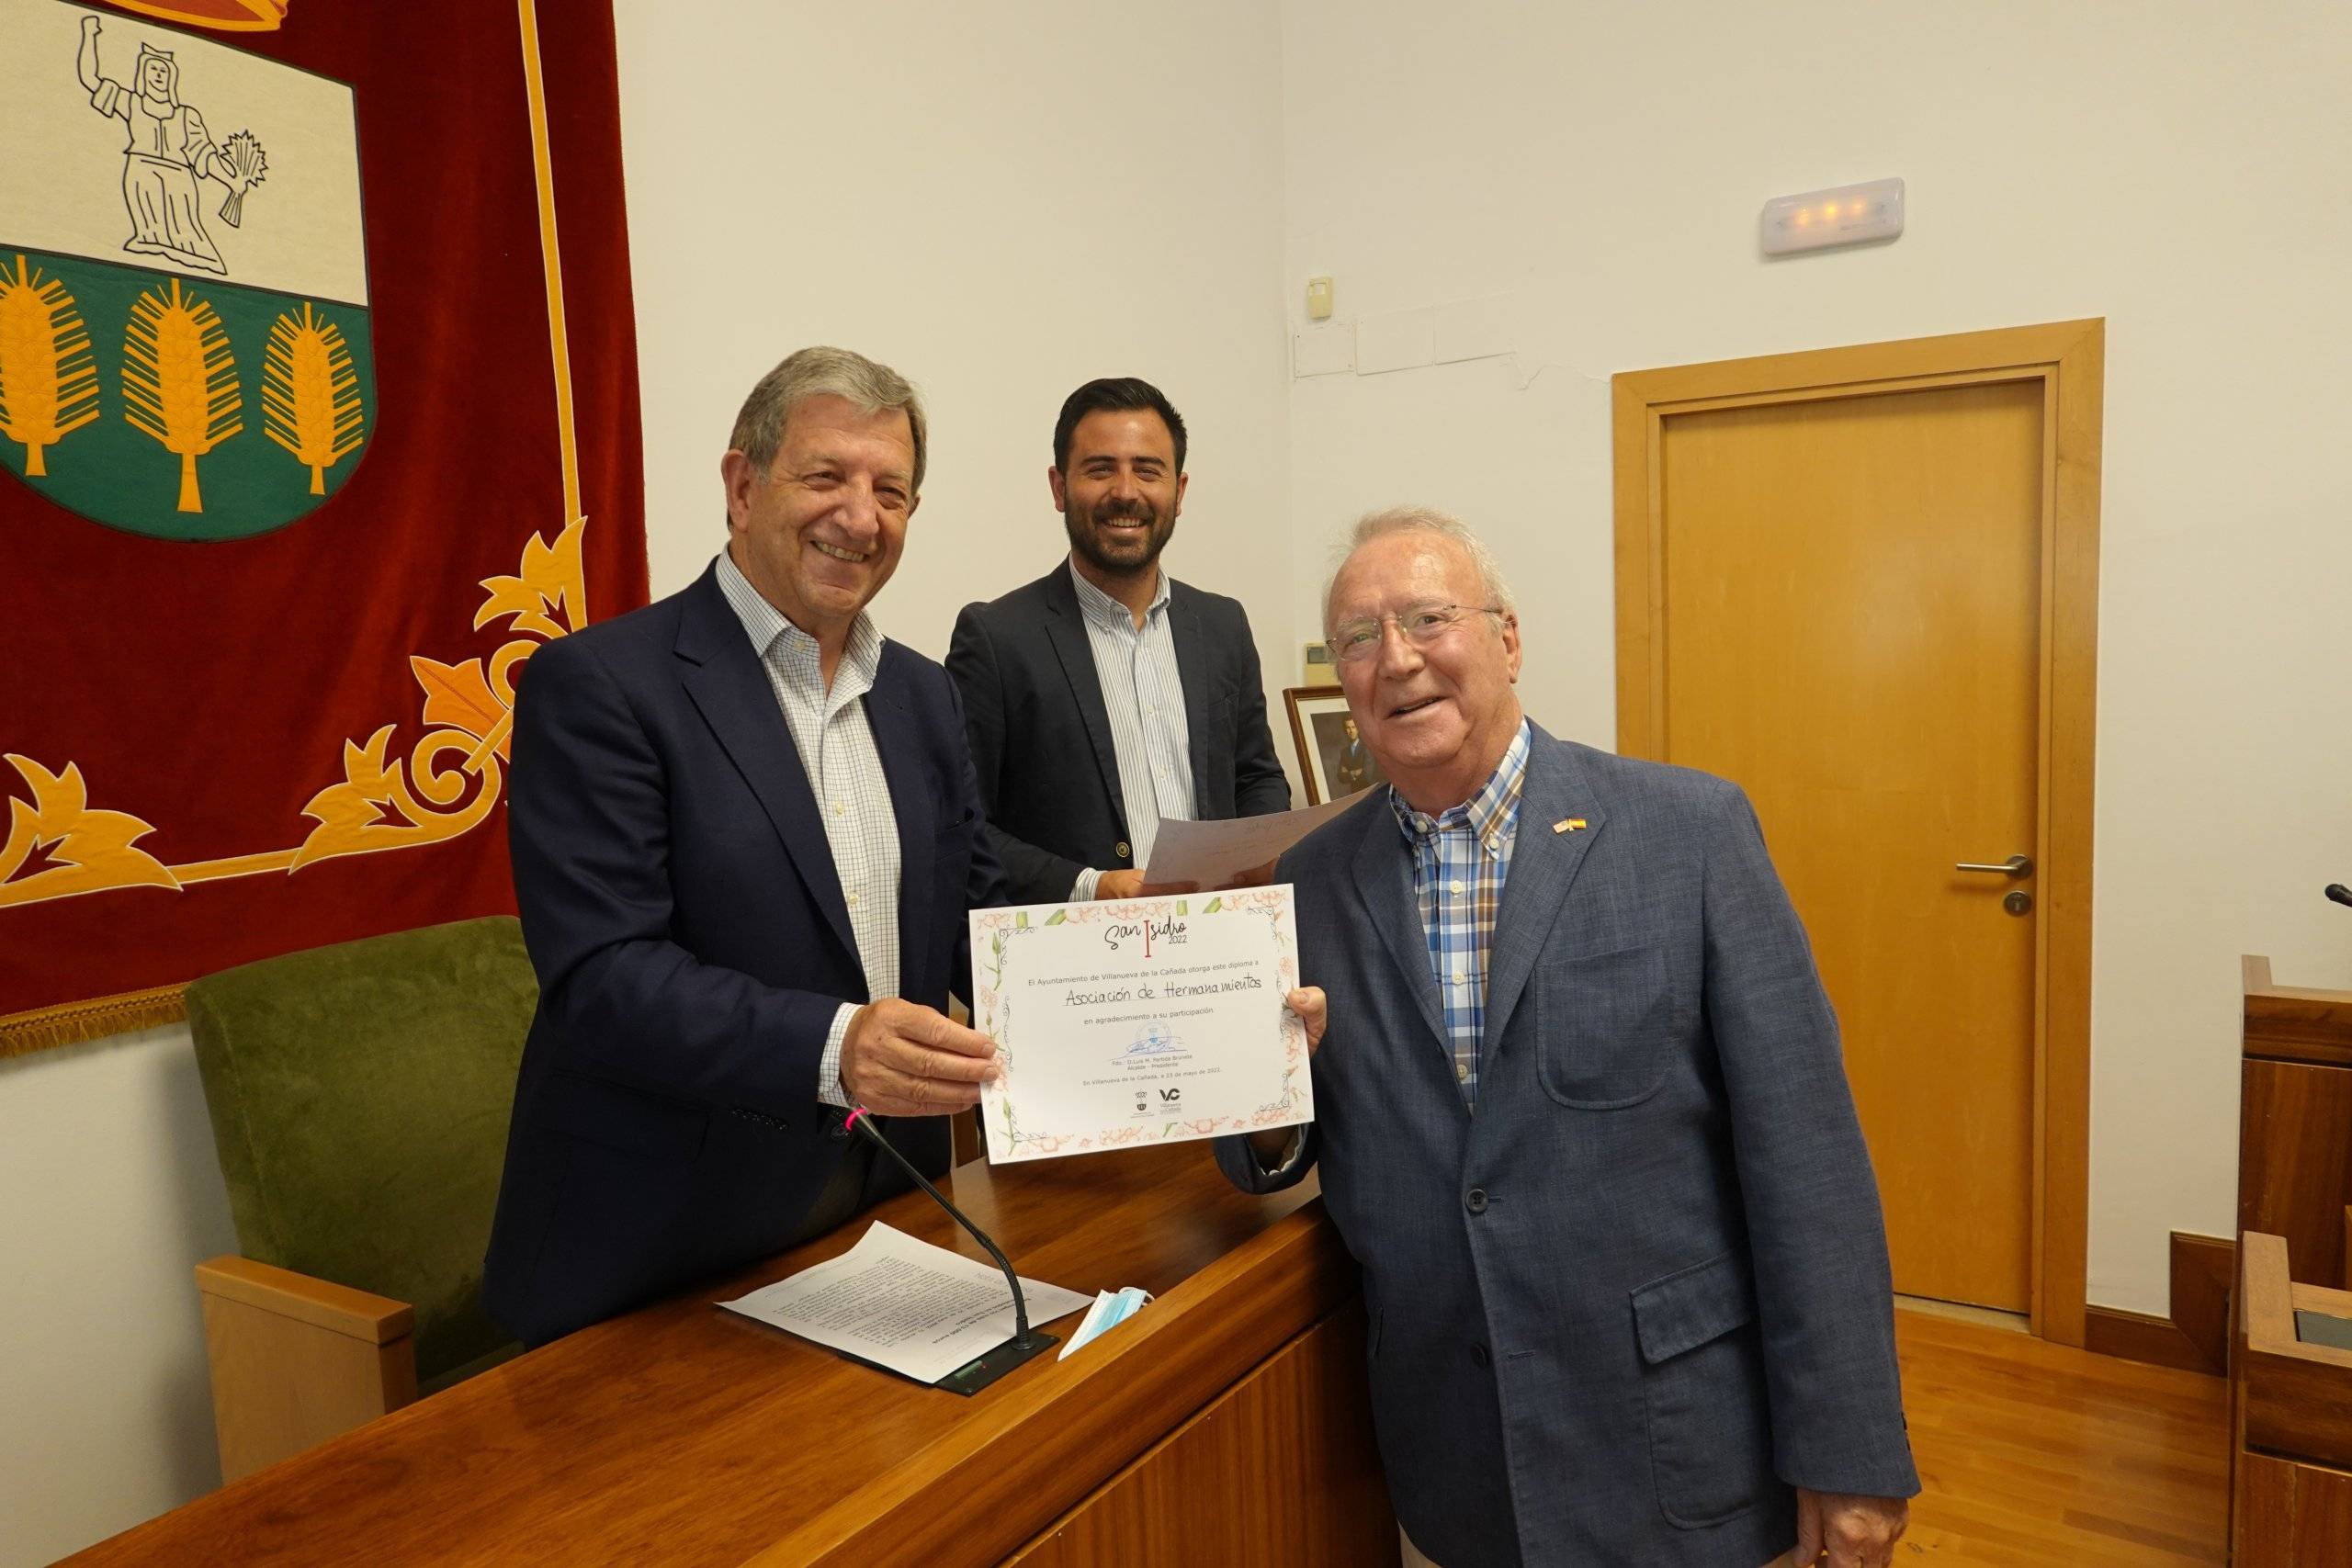 El alcalde, Luis Partida, entrega un diploma por su participación a la Asociación de Hermanamientos